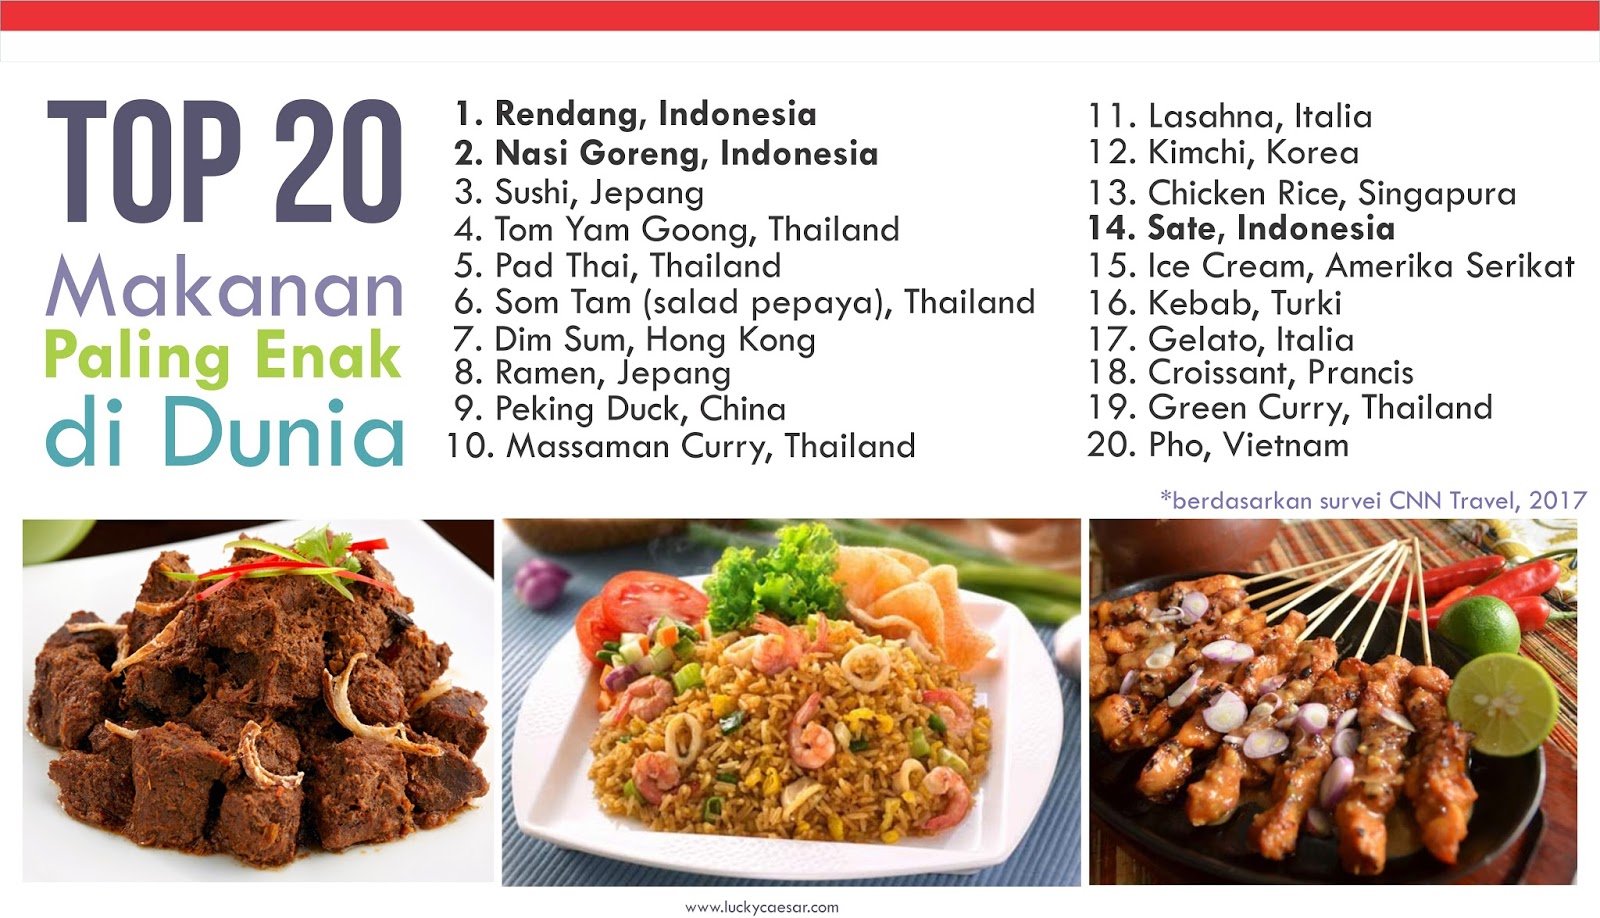 Kontemplasi Asa: 3 Makanan Indonesia Ini Masuk 20 Besar Makanan Paling